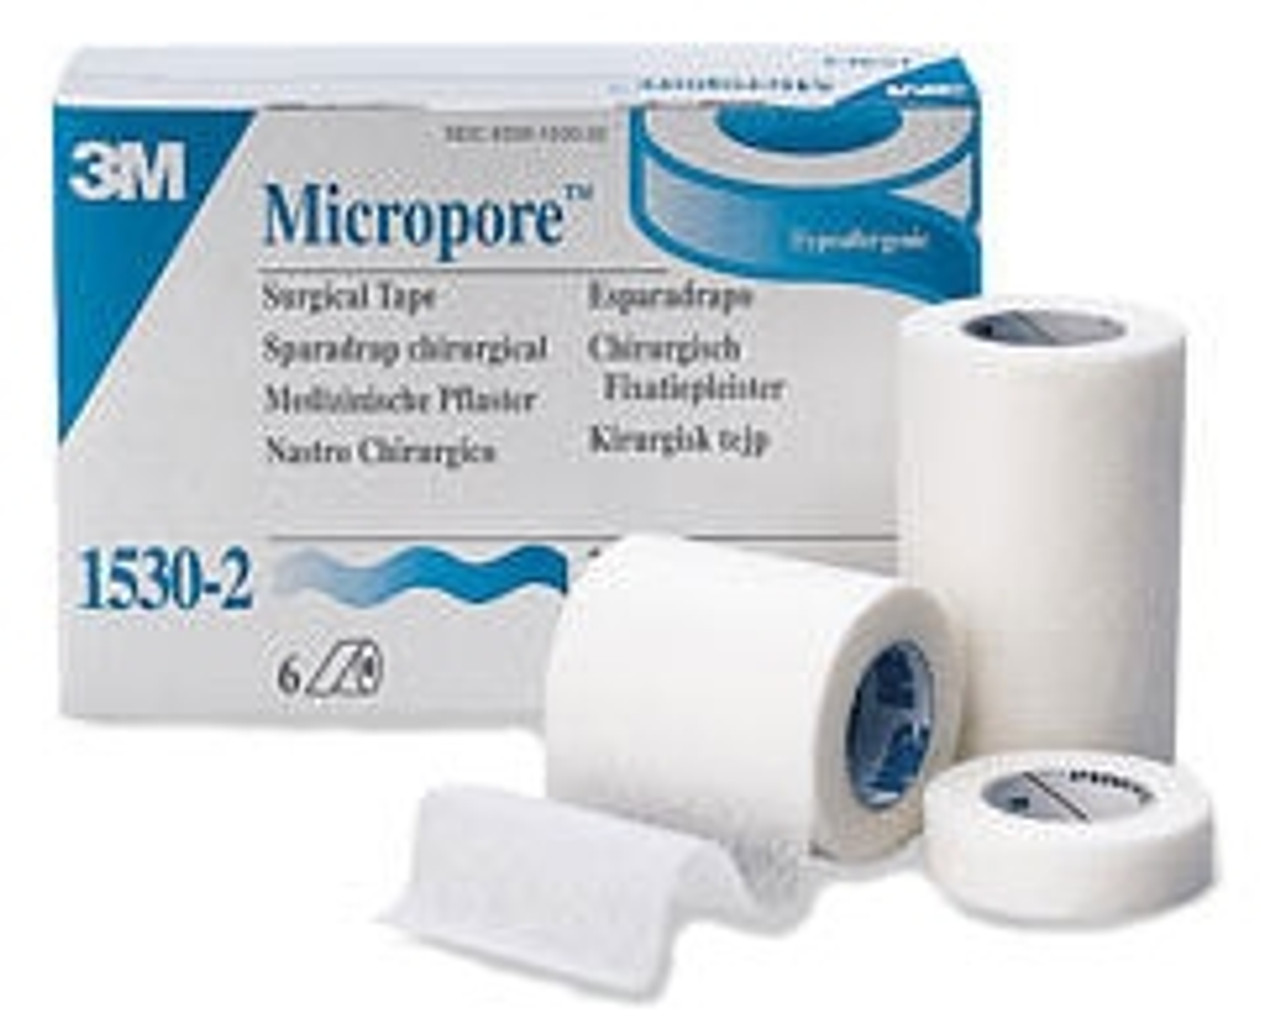 15303 Micropore Medical Tape, The Parthenon Company 1-800-453-8898